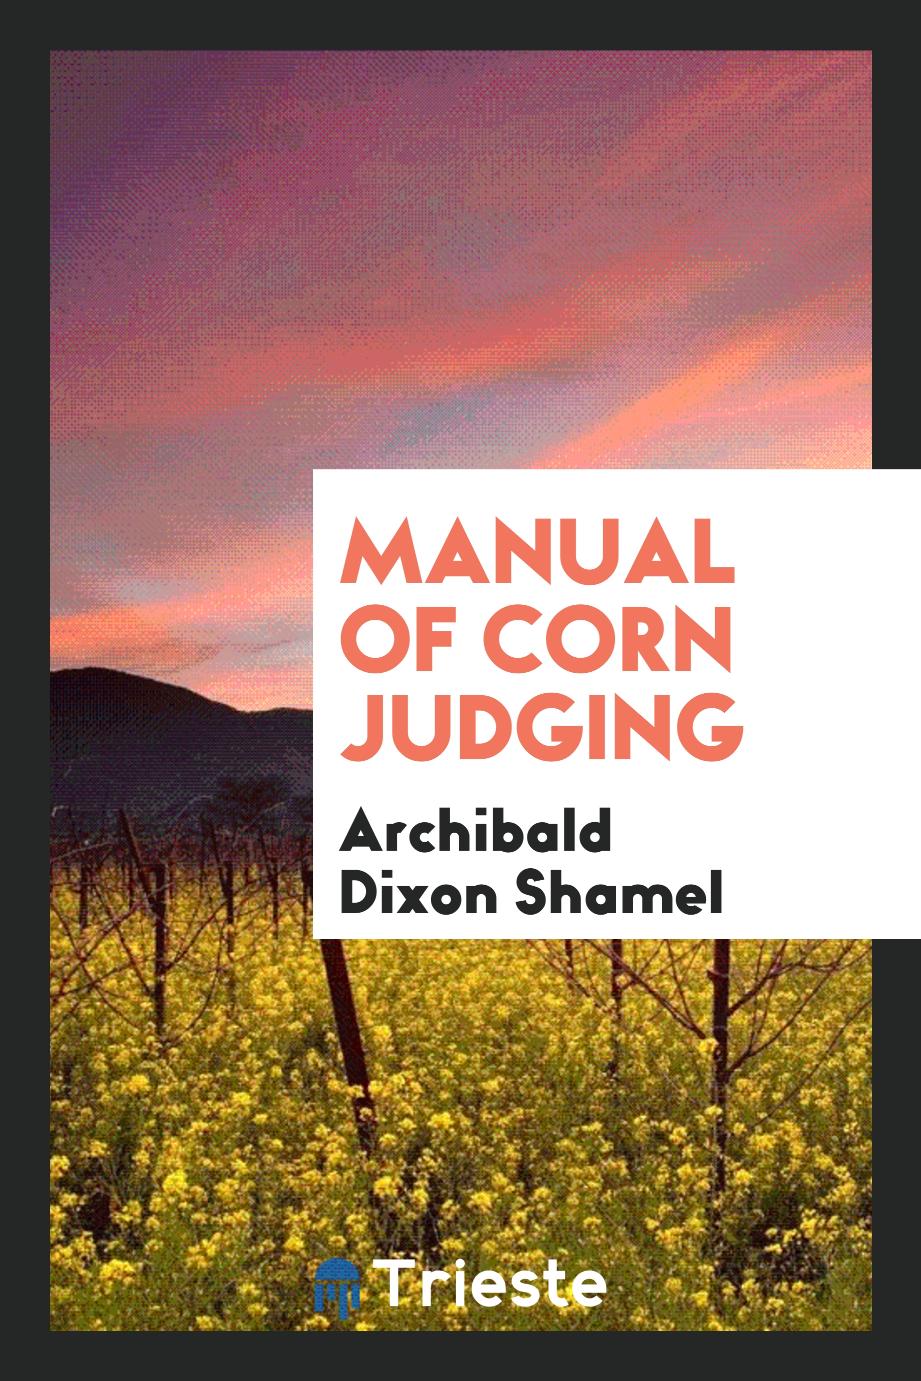 Manual of Corn Judging